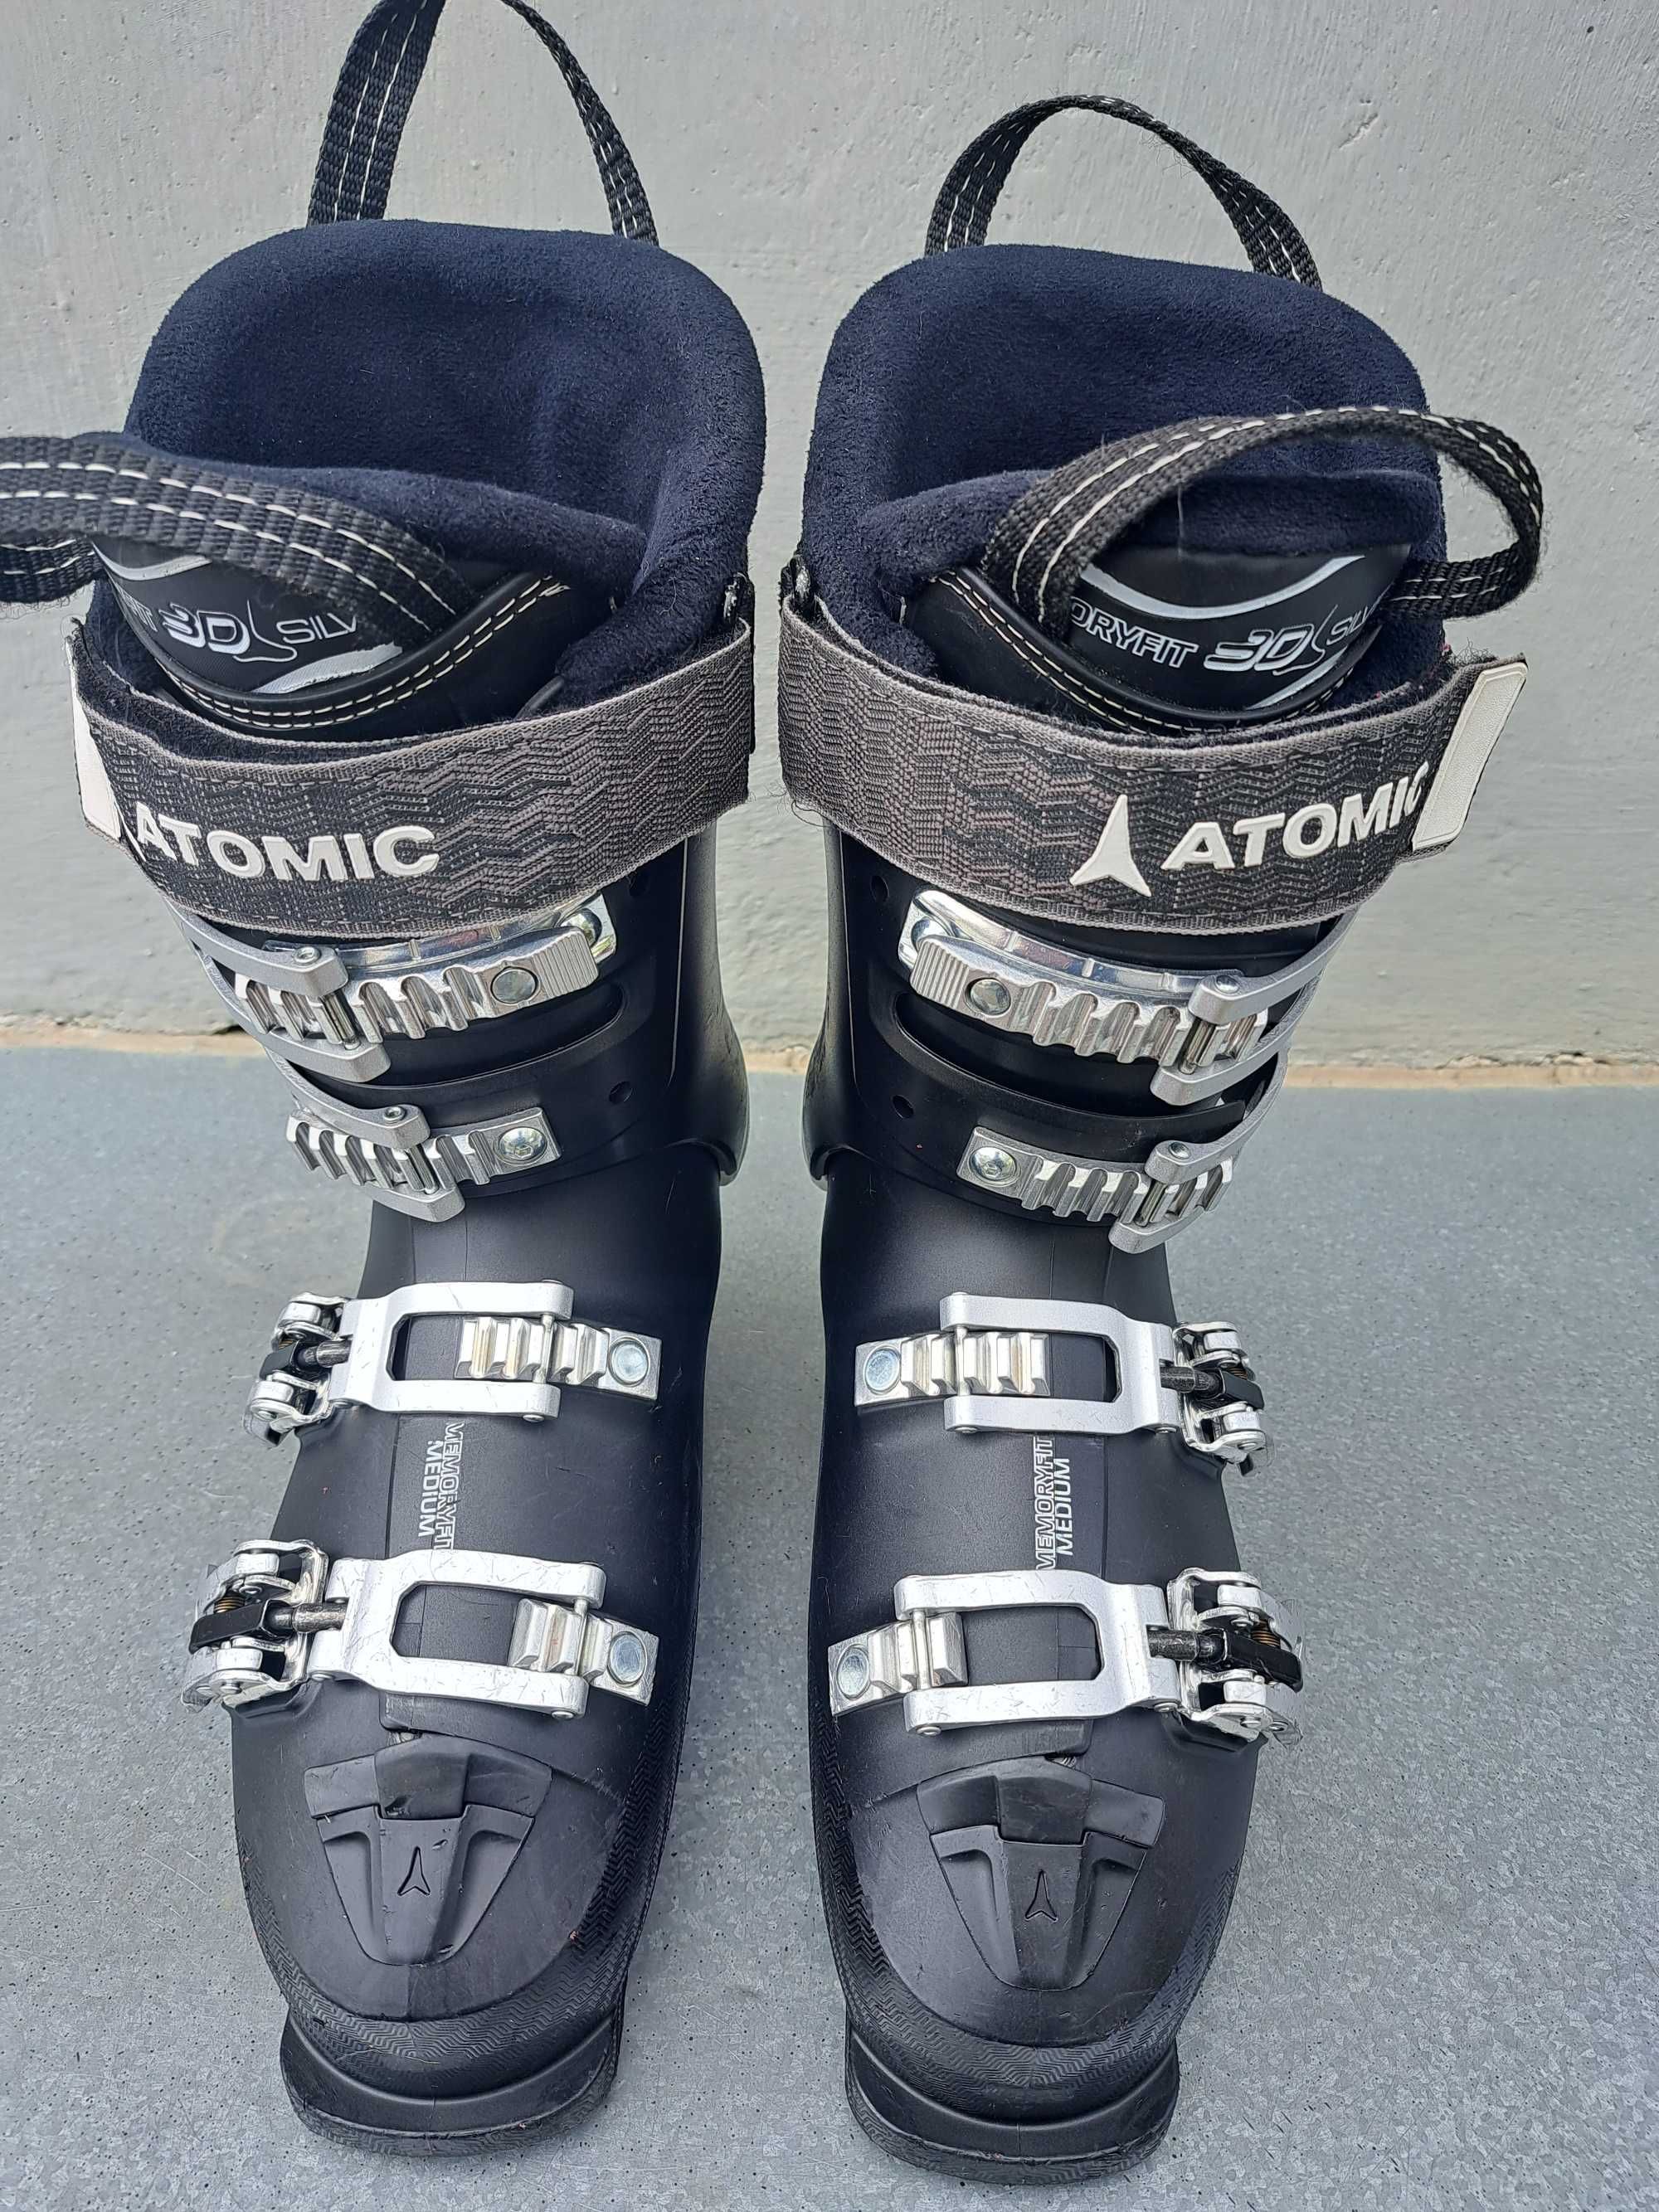 buty narciarskie damskie Atomic Hawx R90 Prime rozmiar 39 - 40